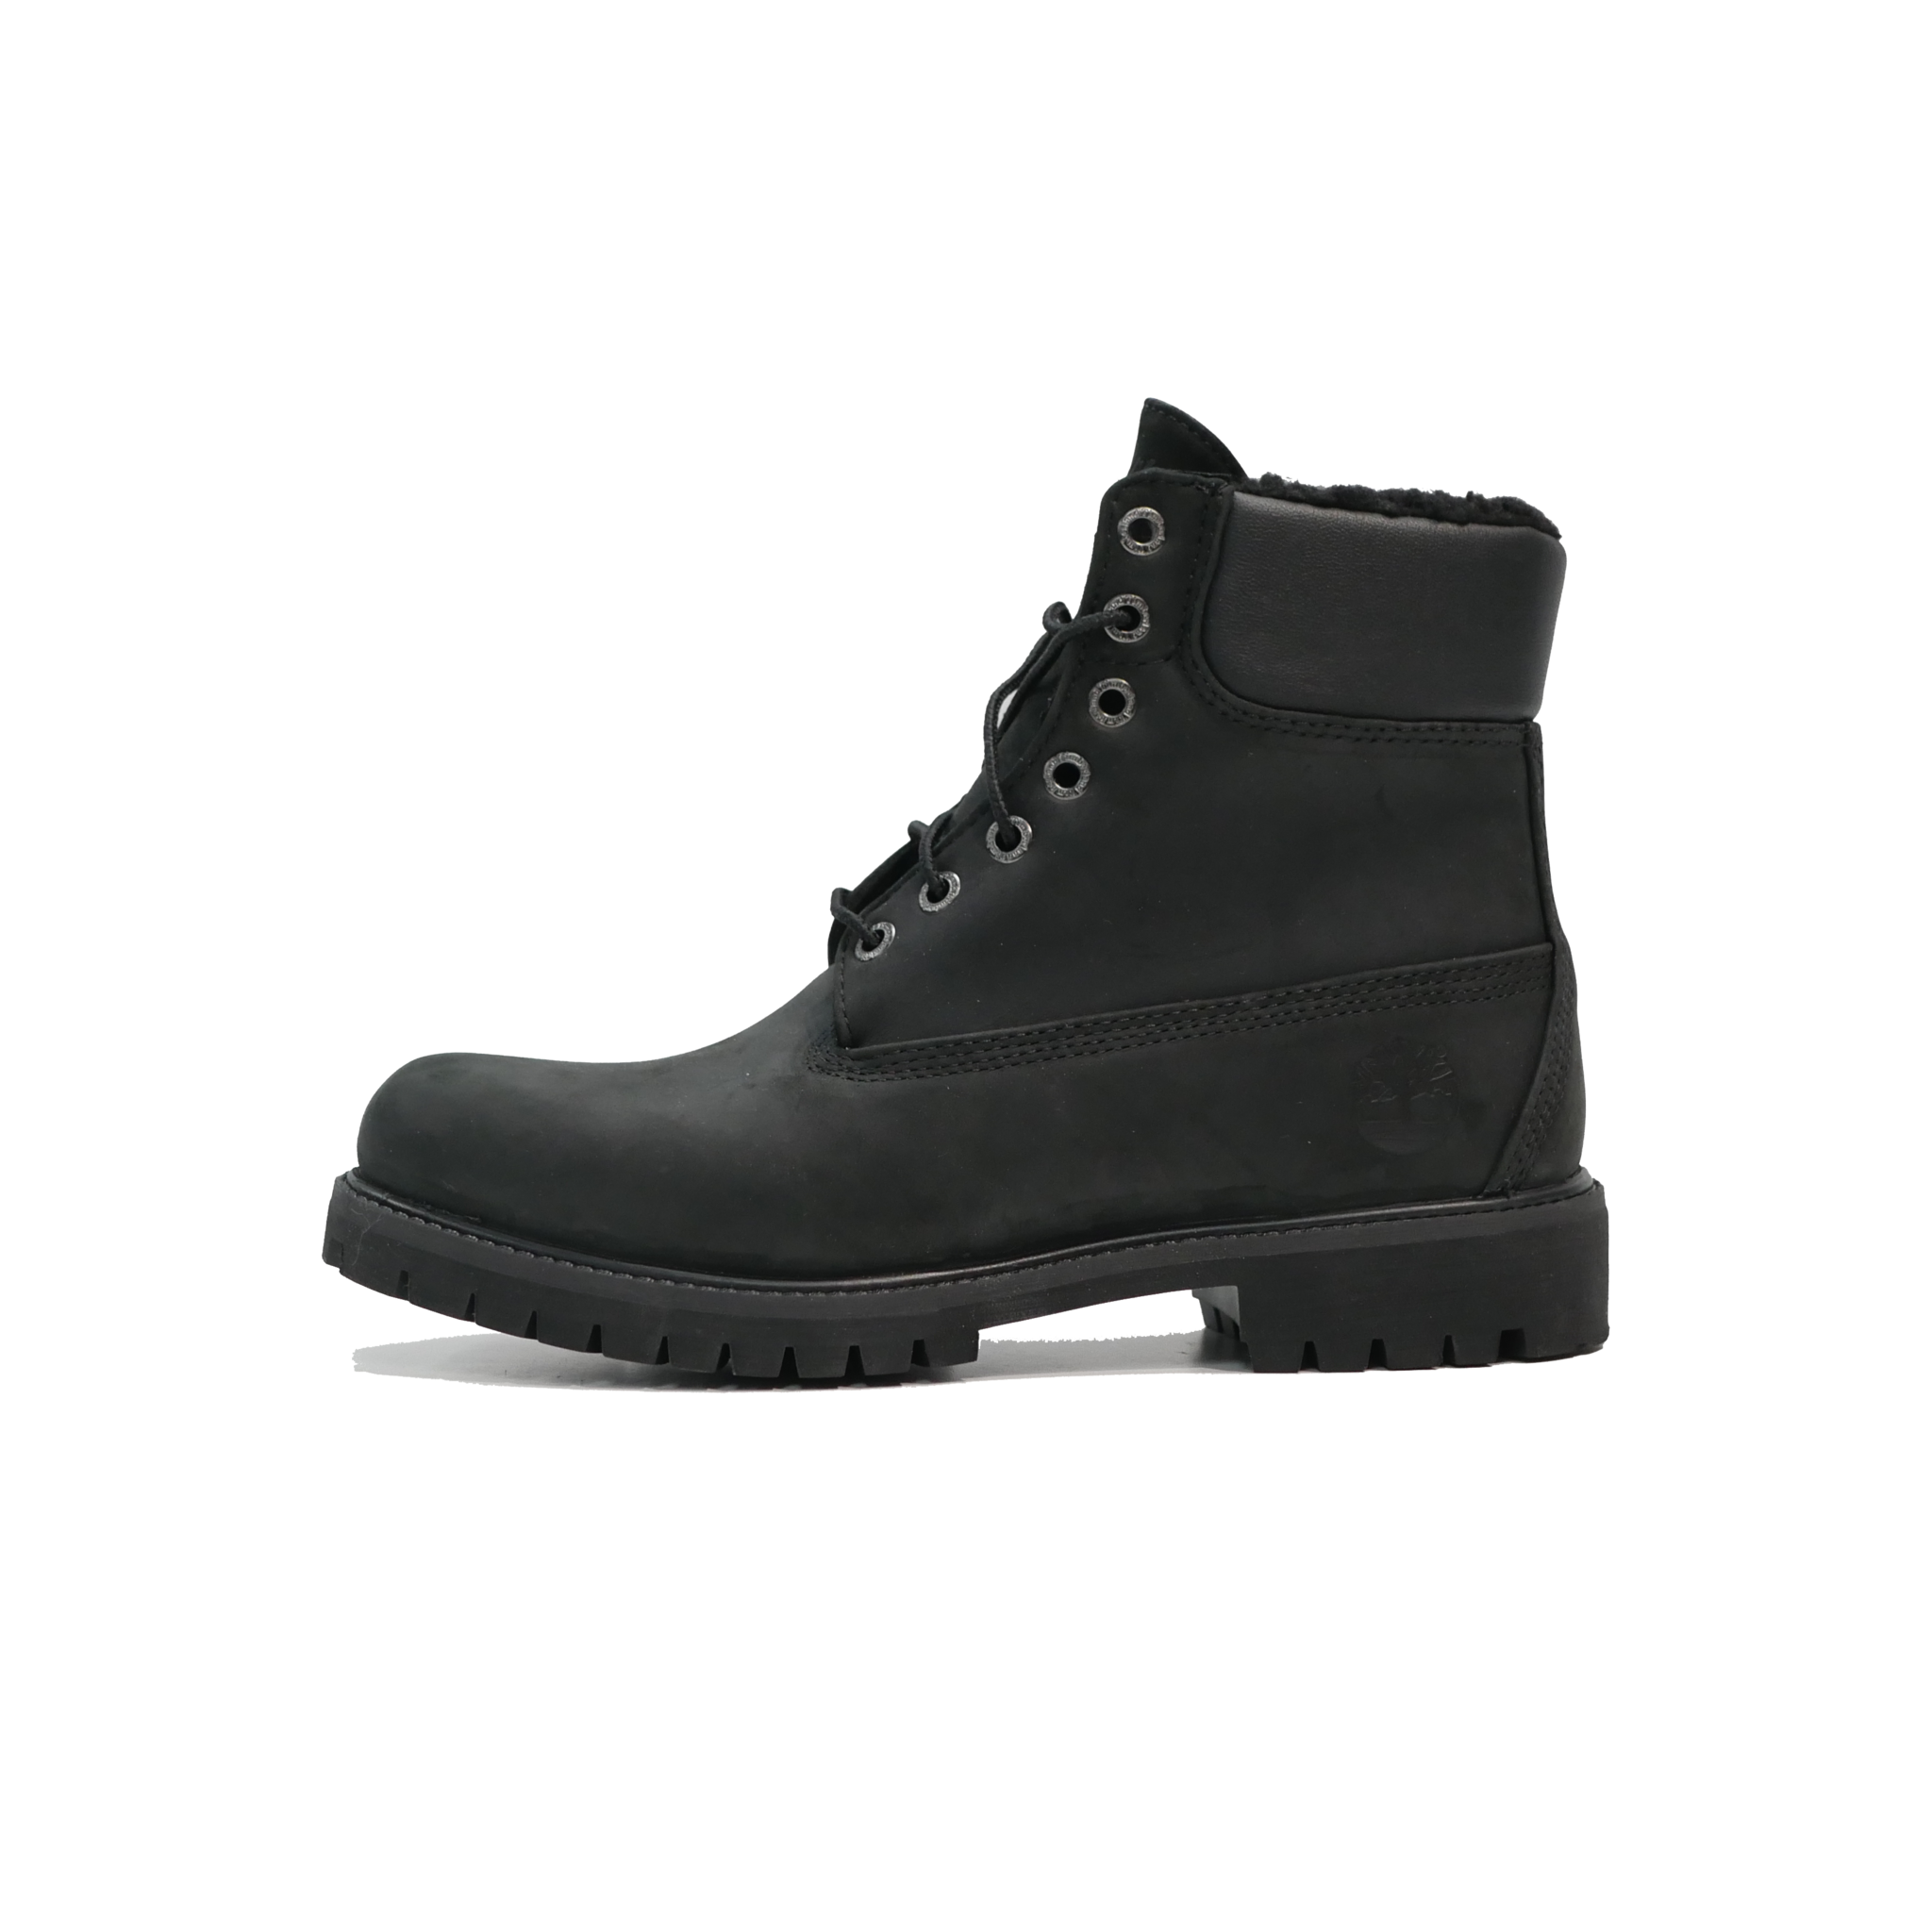 6In Fur Fleece Boot Black Leather 001 - Sam Tabak